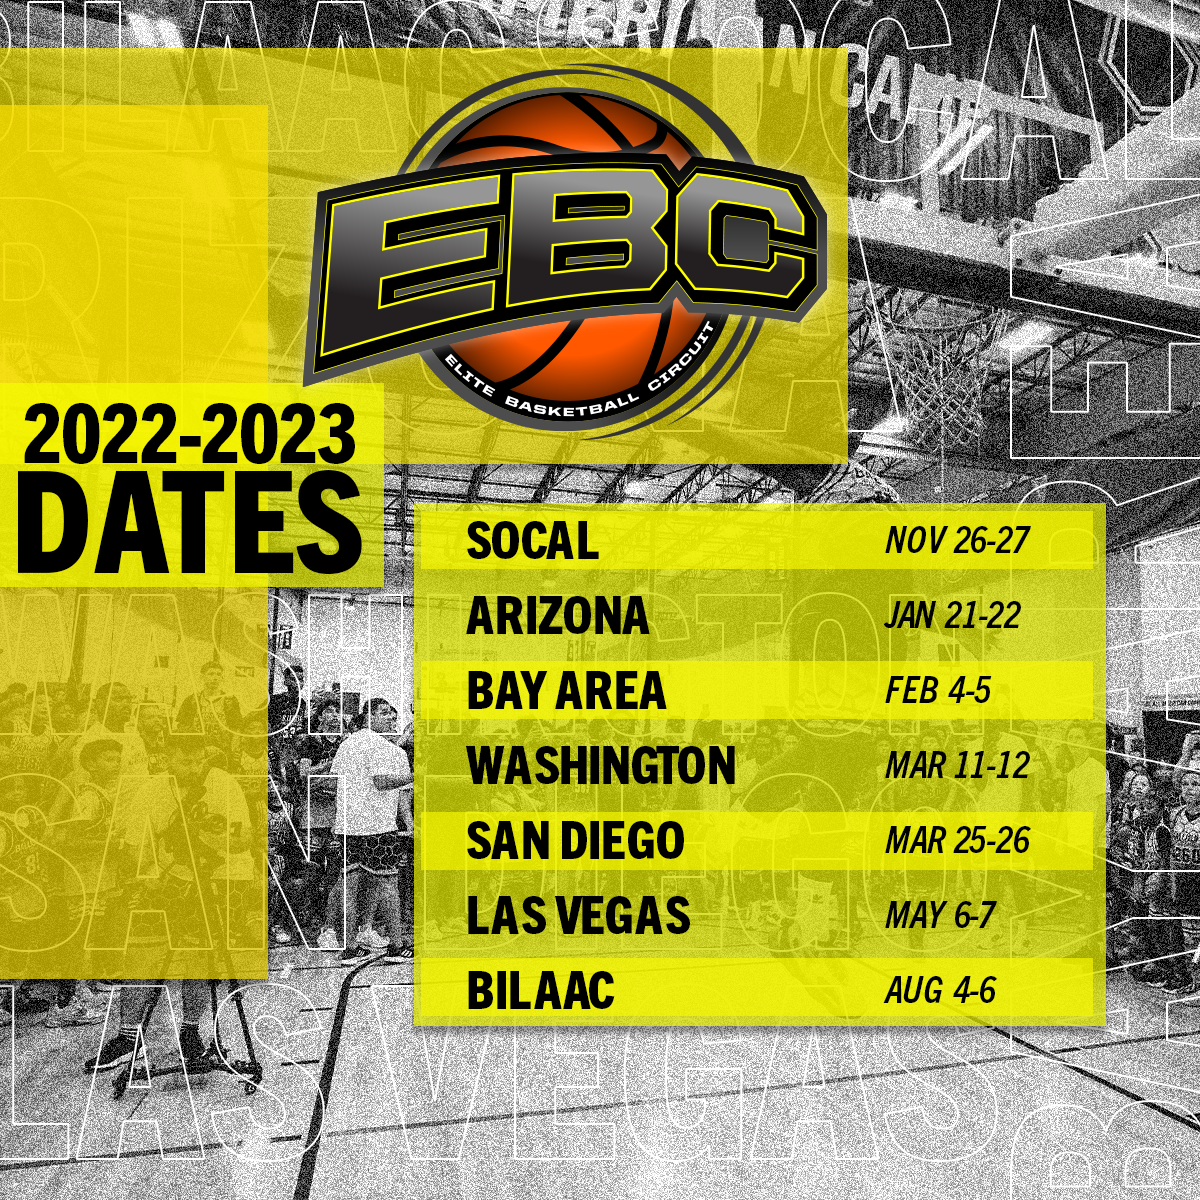 2022-2023 Dates